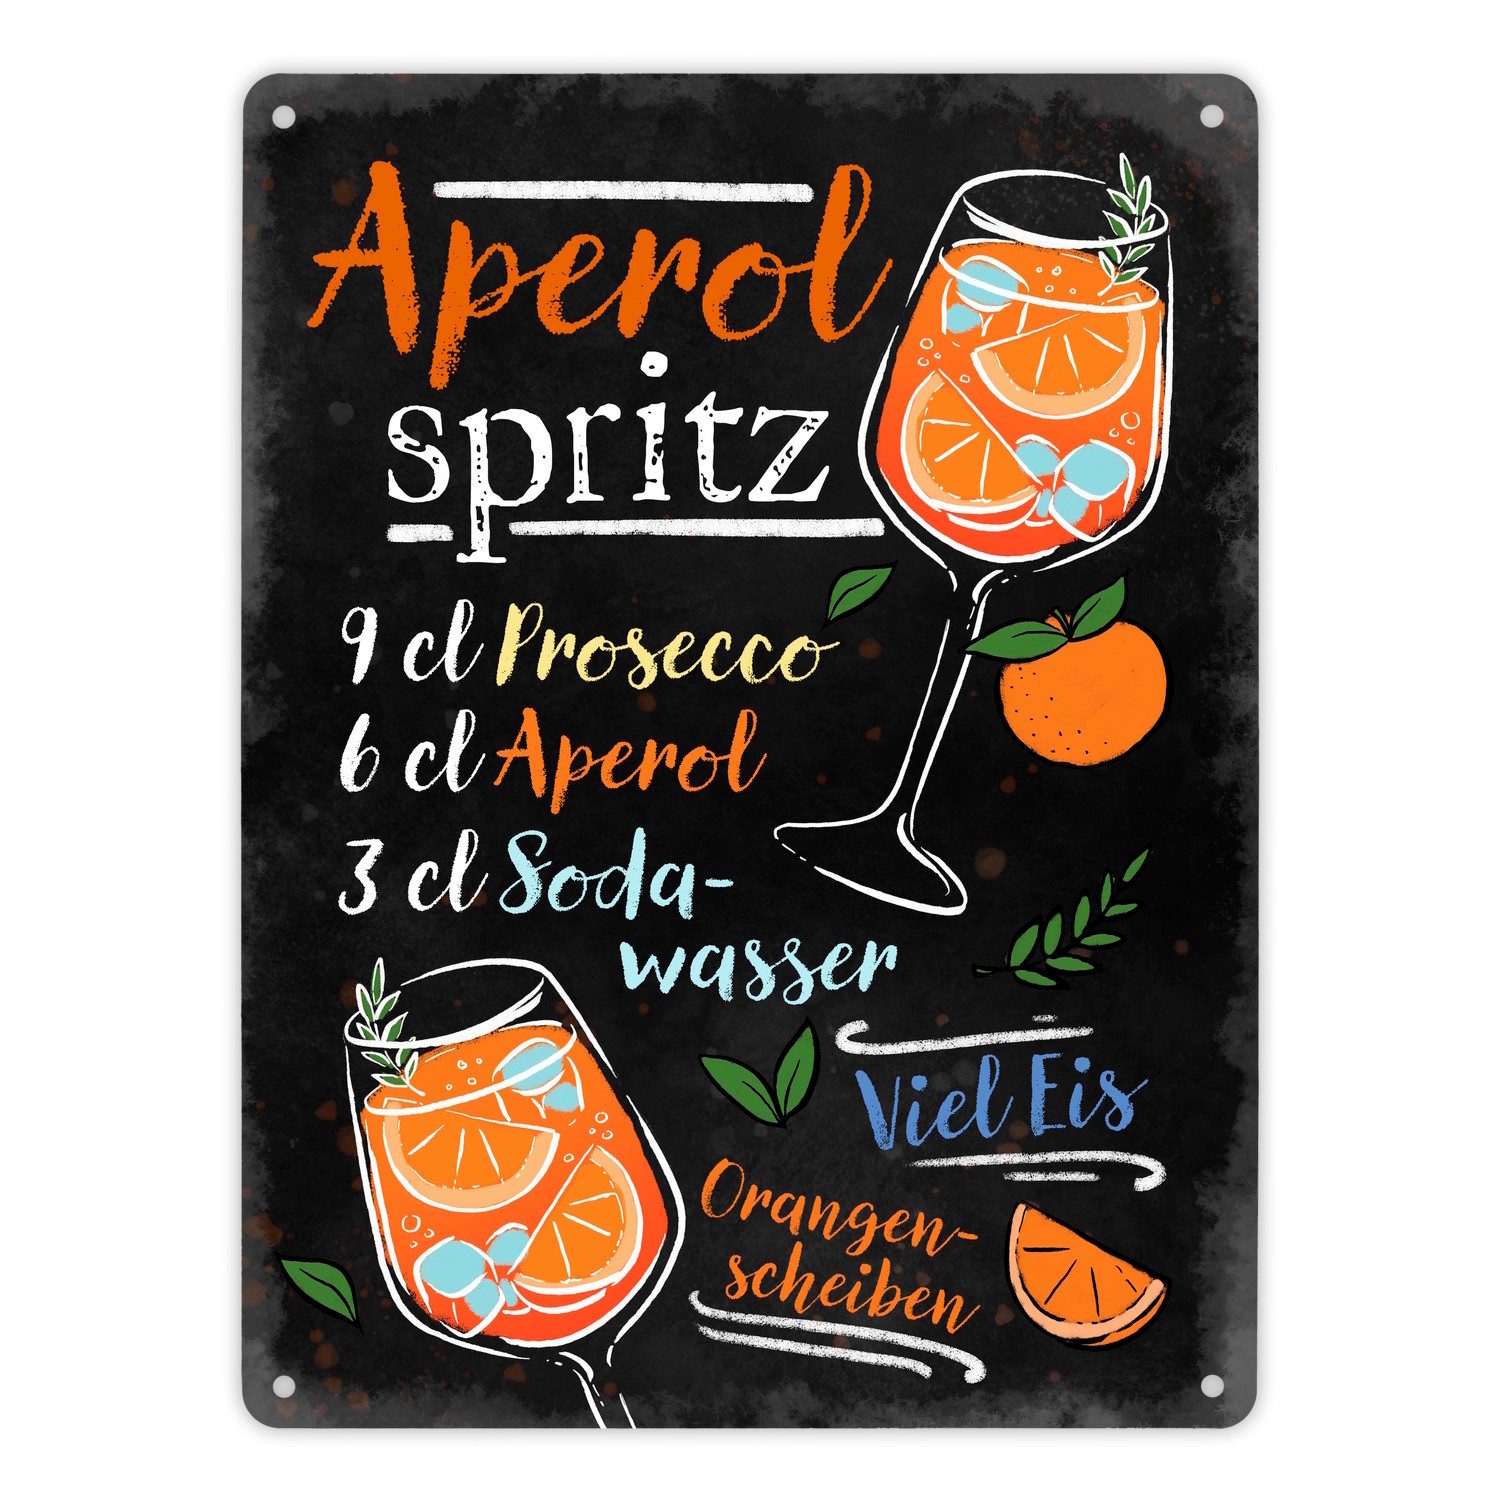 speecheese Metallschild Cocktail-Rezept Aperol Spritz Metallschild XL in 21x28 cm